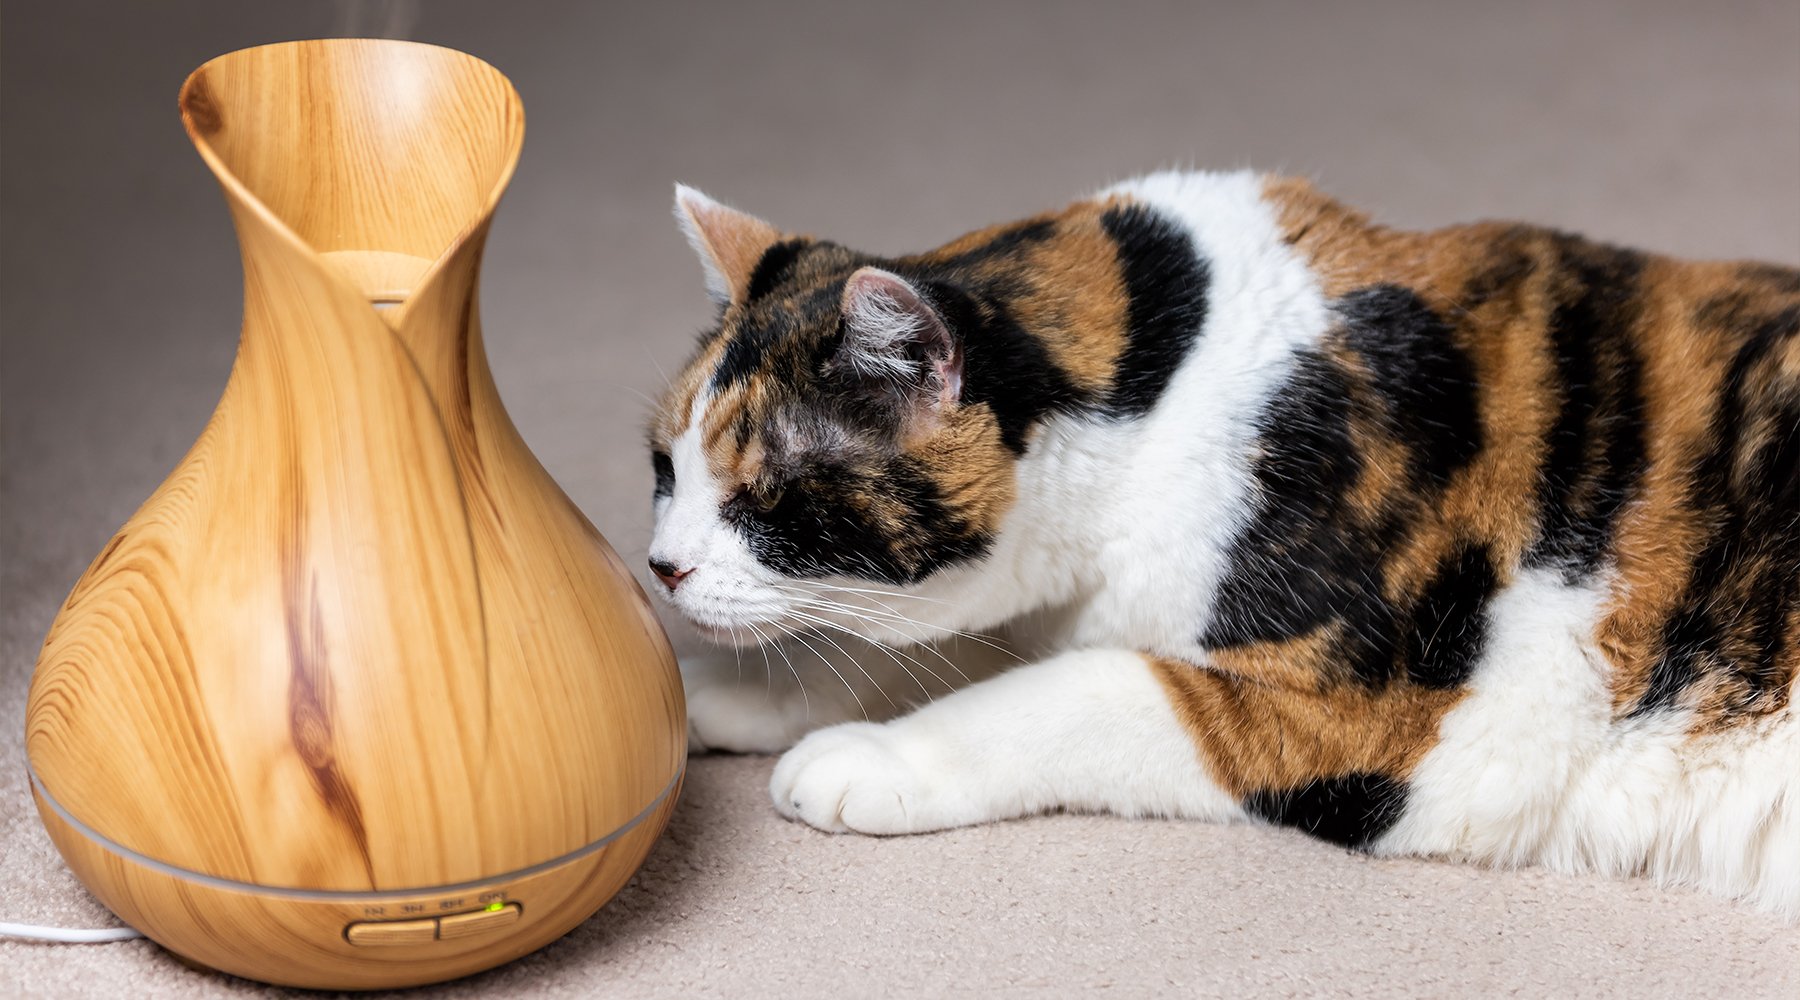 Calico cat examining essential oil diffuser